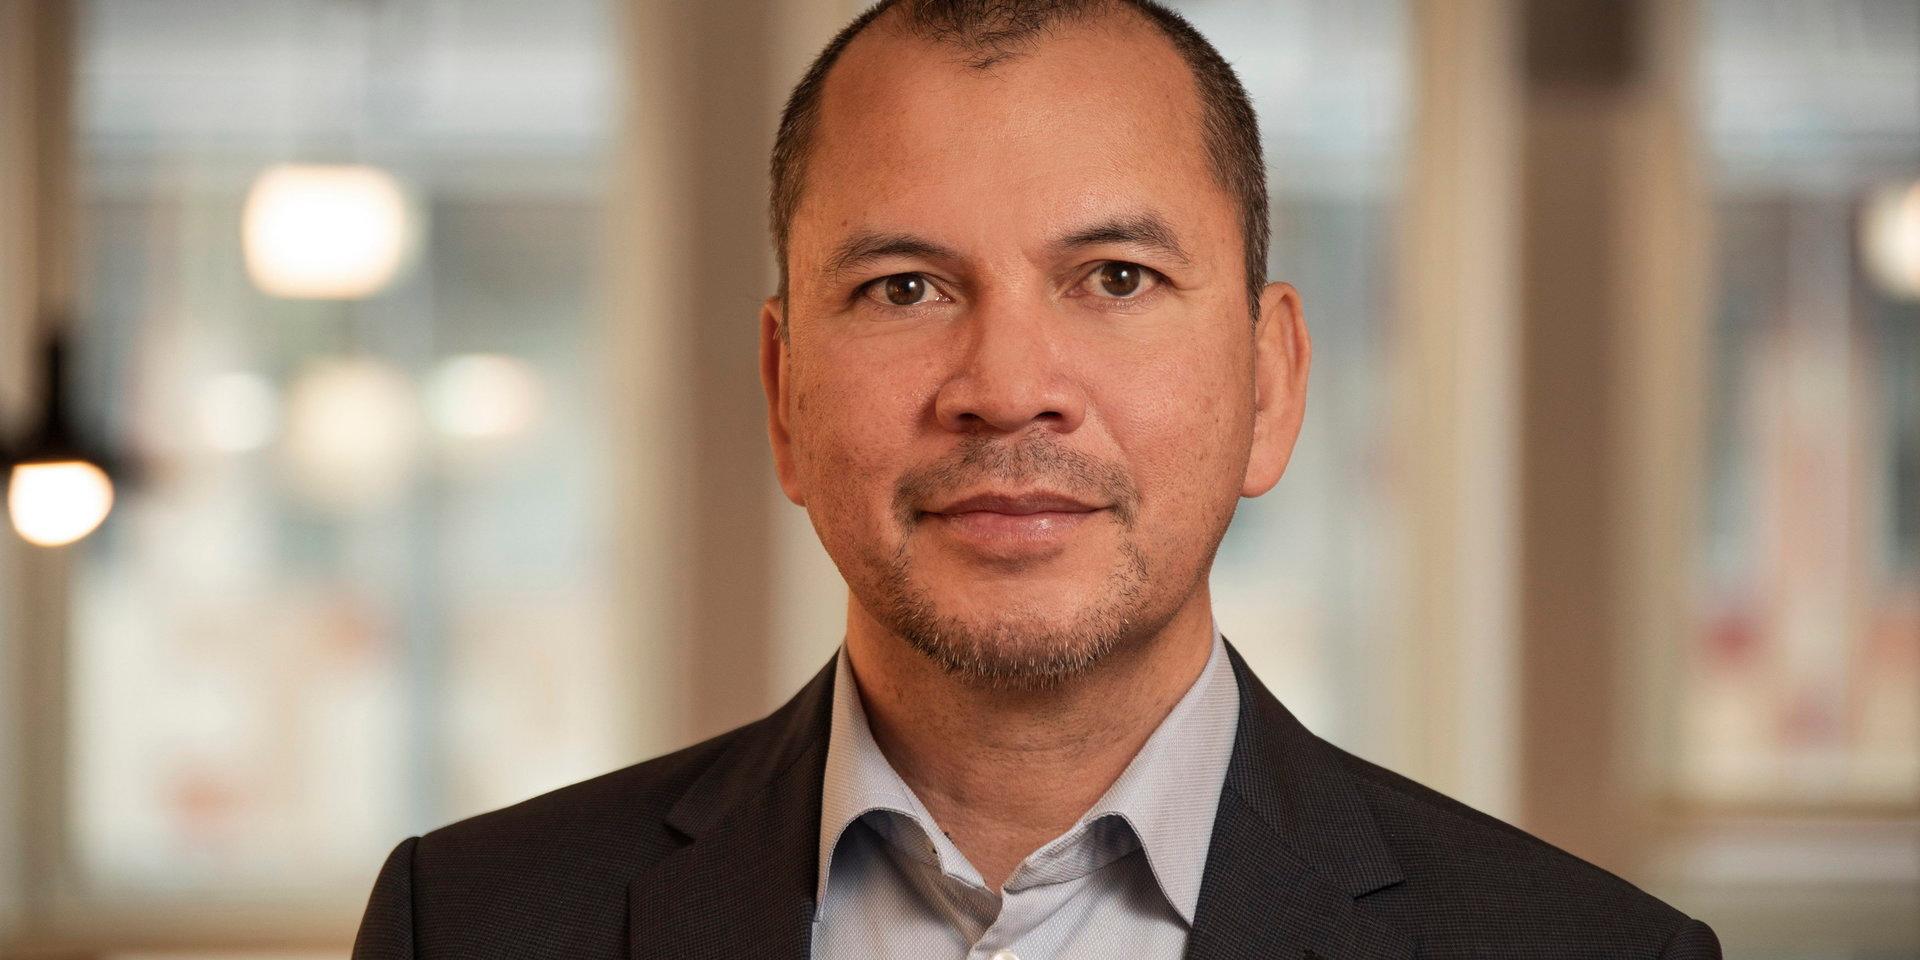 Christer Johansson är säkerhetsdirektör på Statens institutionsstyrelse sedan den 1 februari 2021.